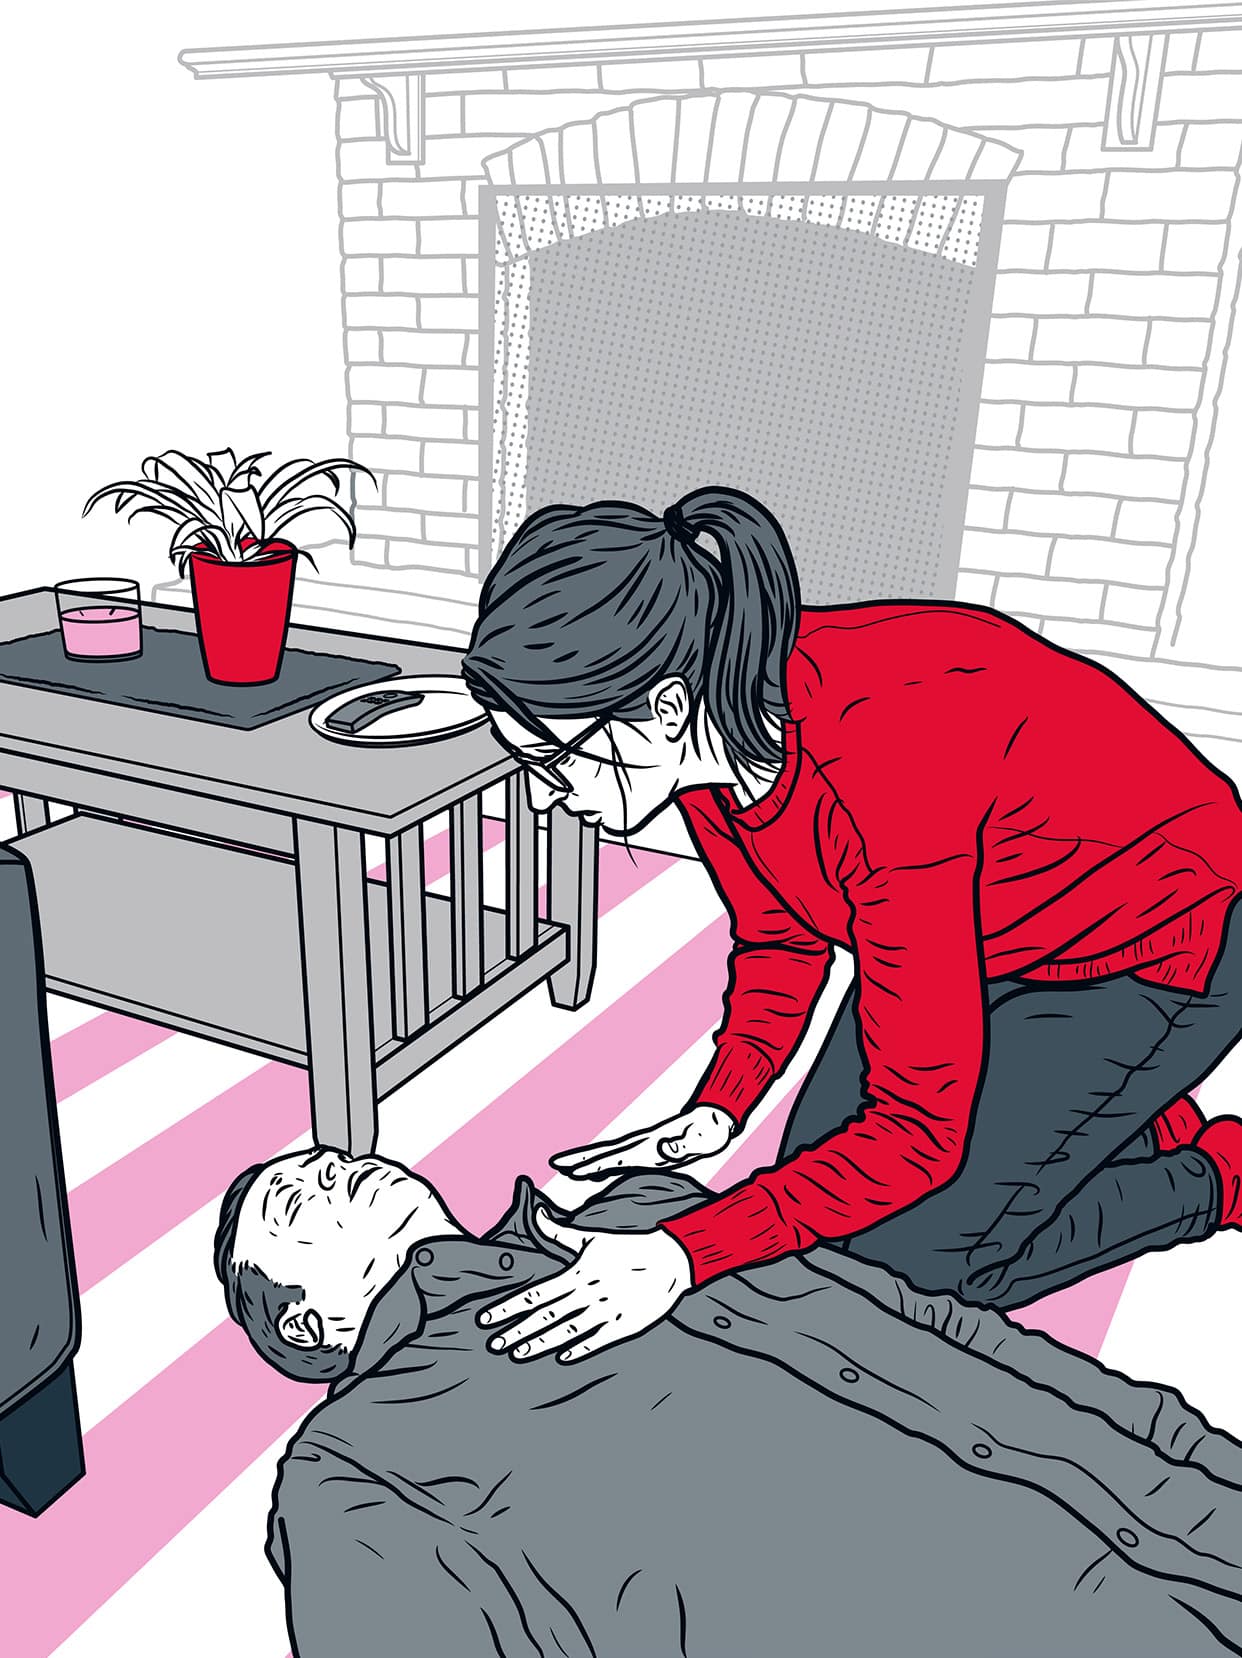 Illustrasjon av kvinne som finner livløs mann på stuegulvet. Det er mistanke om hjertestans, hvor hjerte- og lungekompresjoner (HLR) bør iverksettes. 